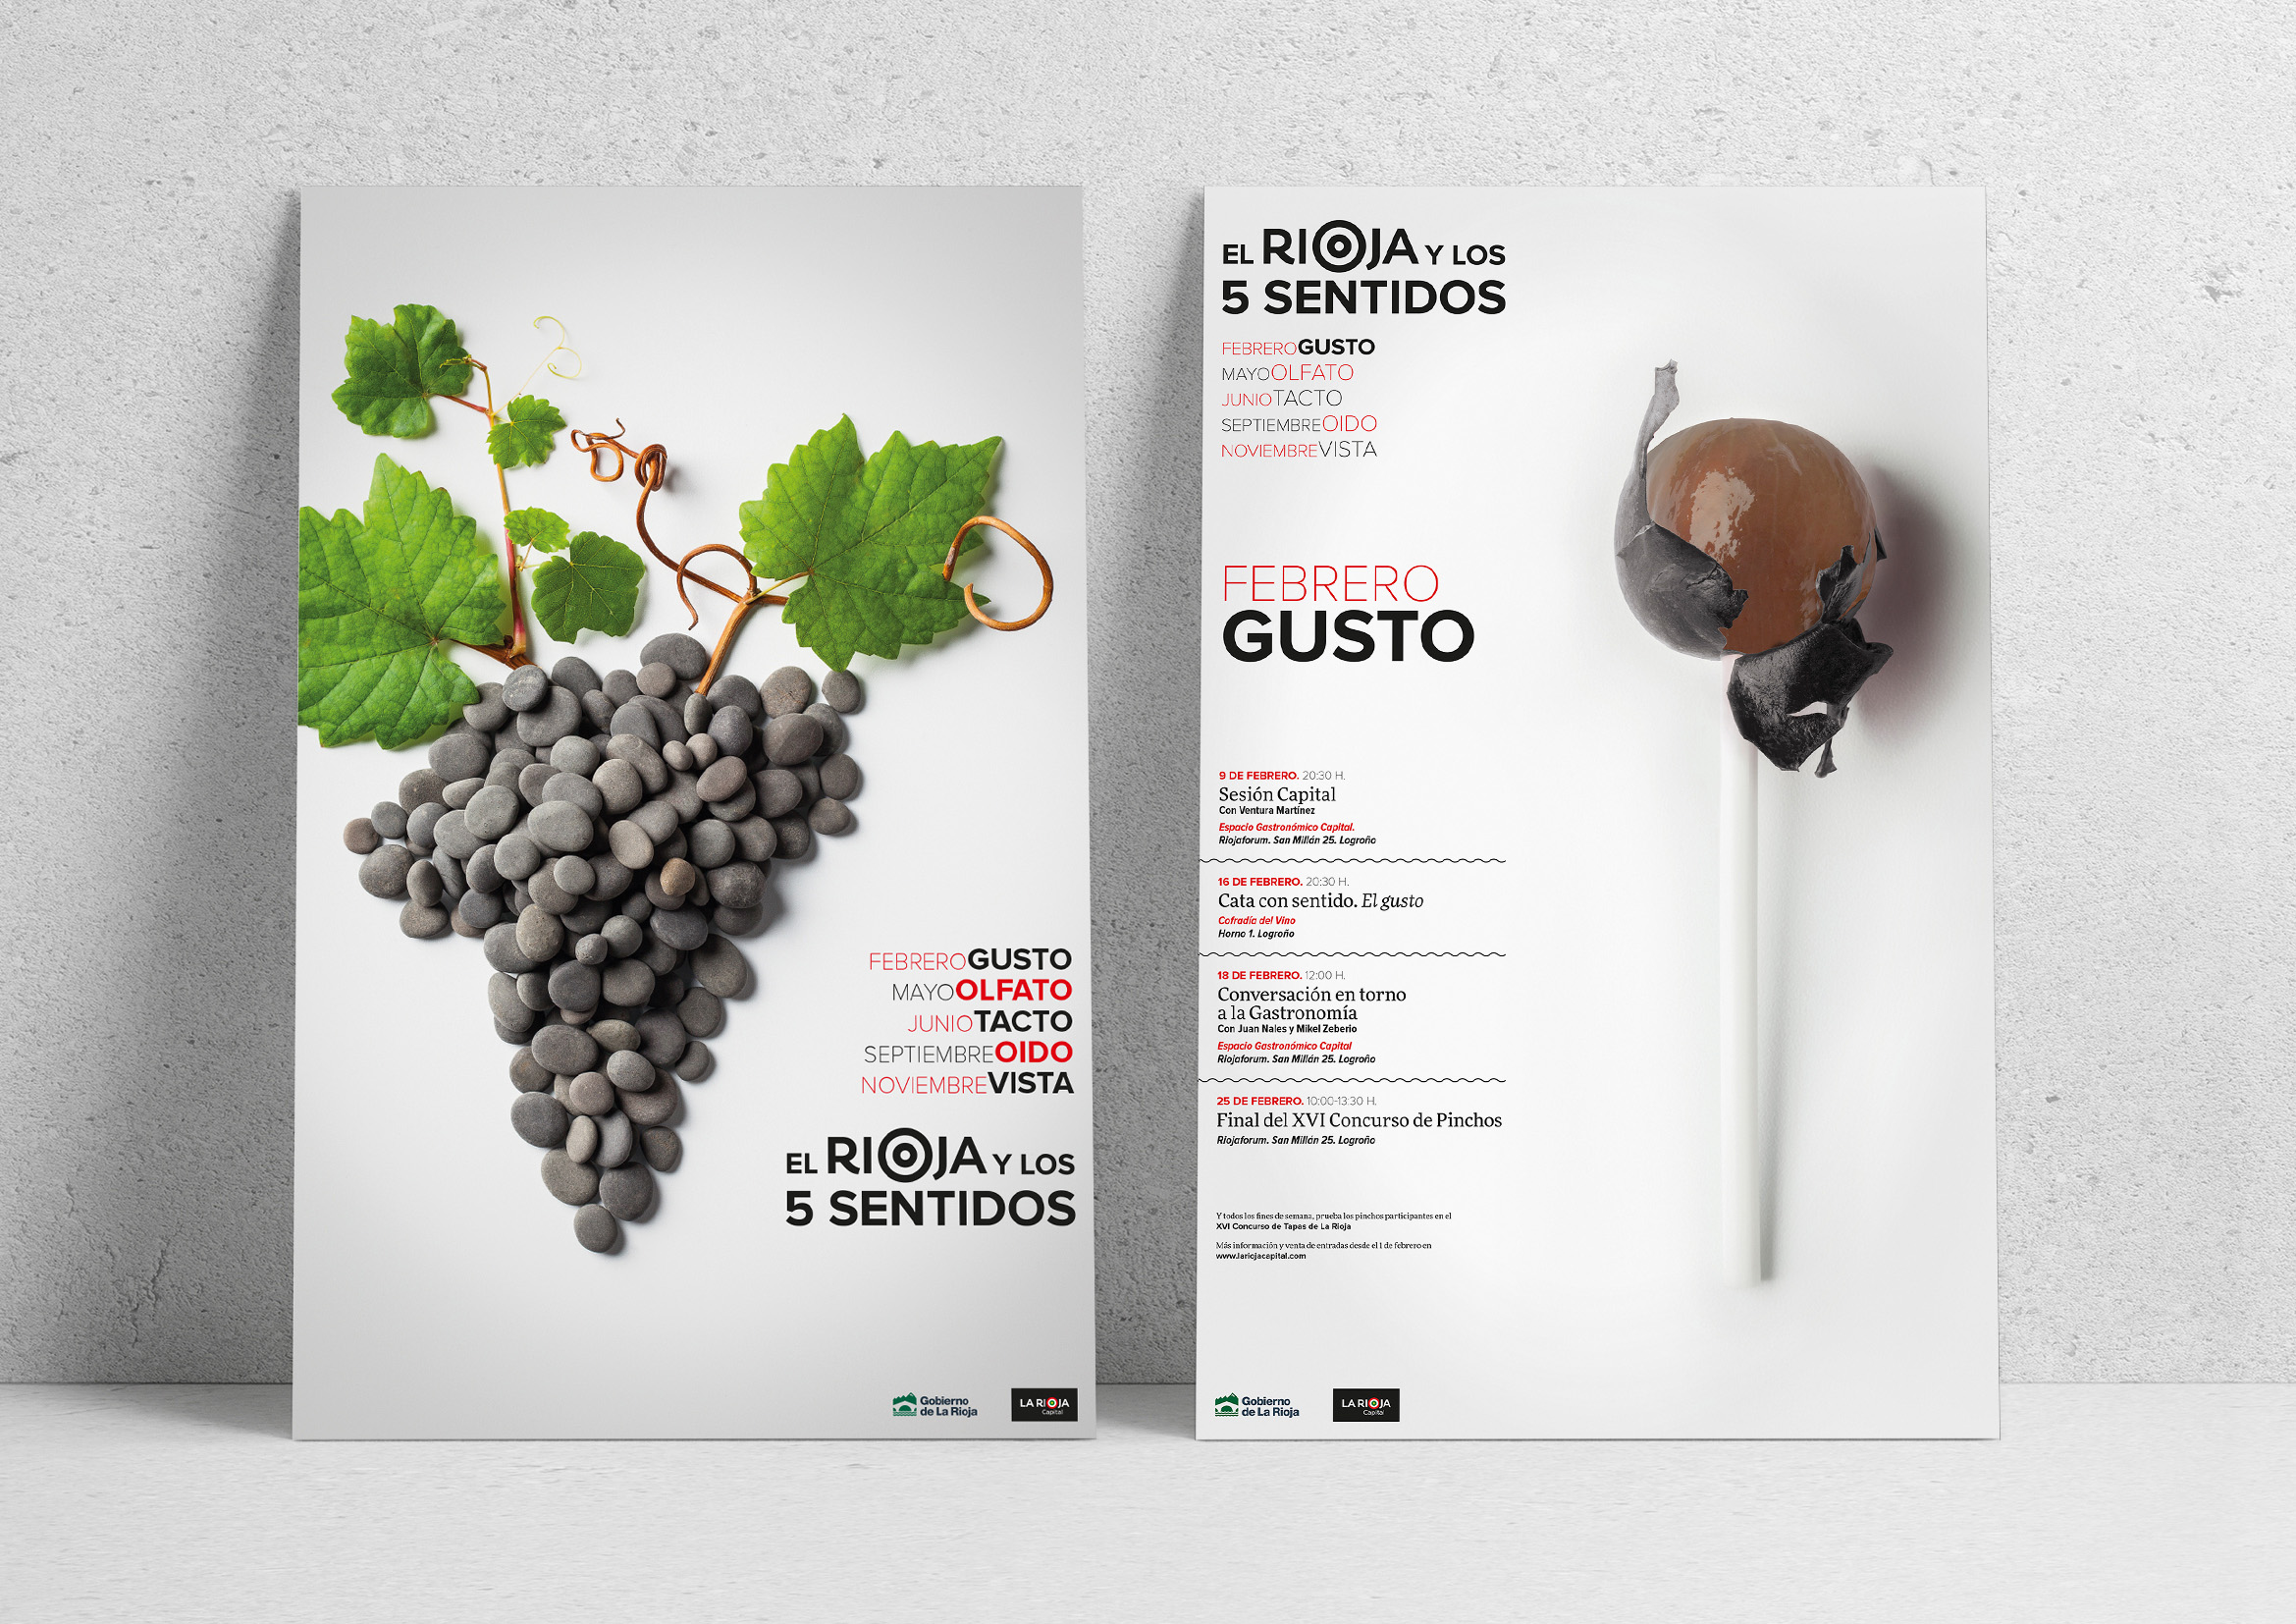 El Rioja y los 5 sentidos 2017 by Óscar Ortega Quesada - Creative Work